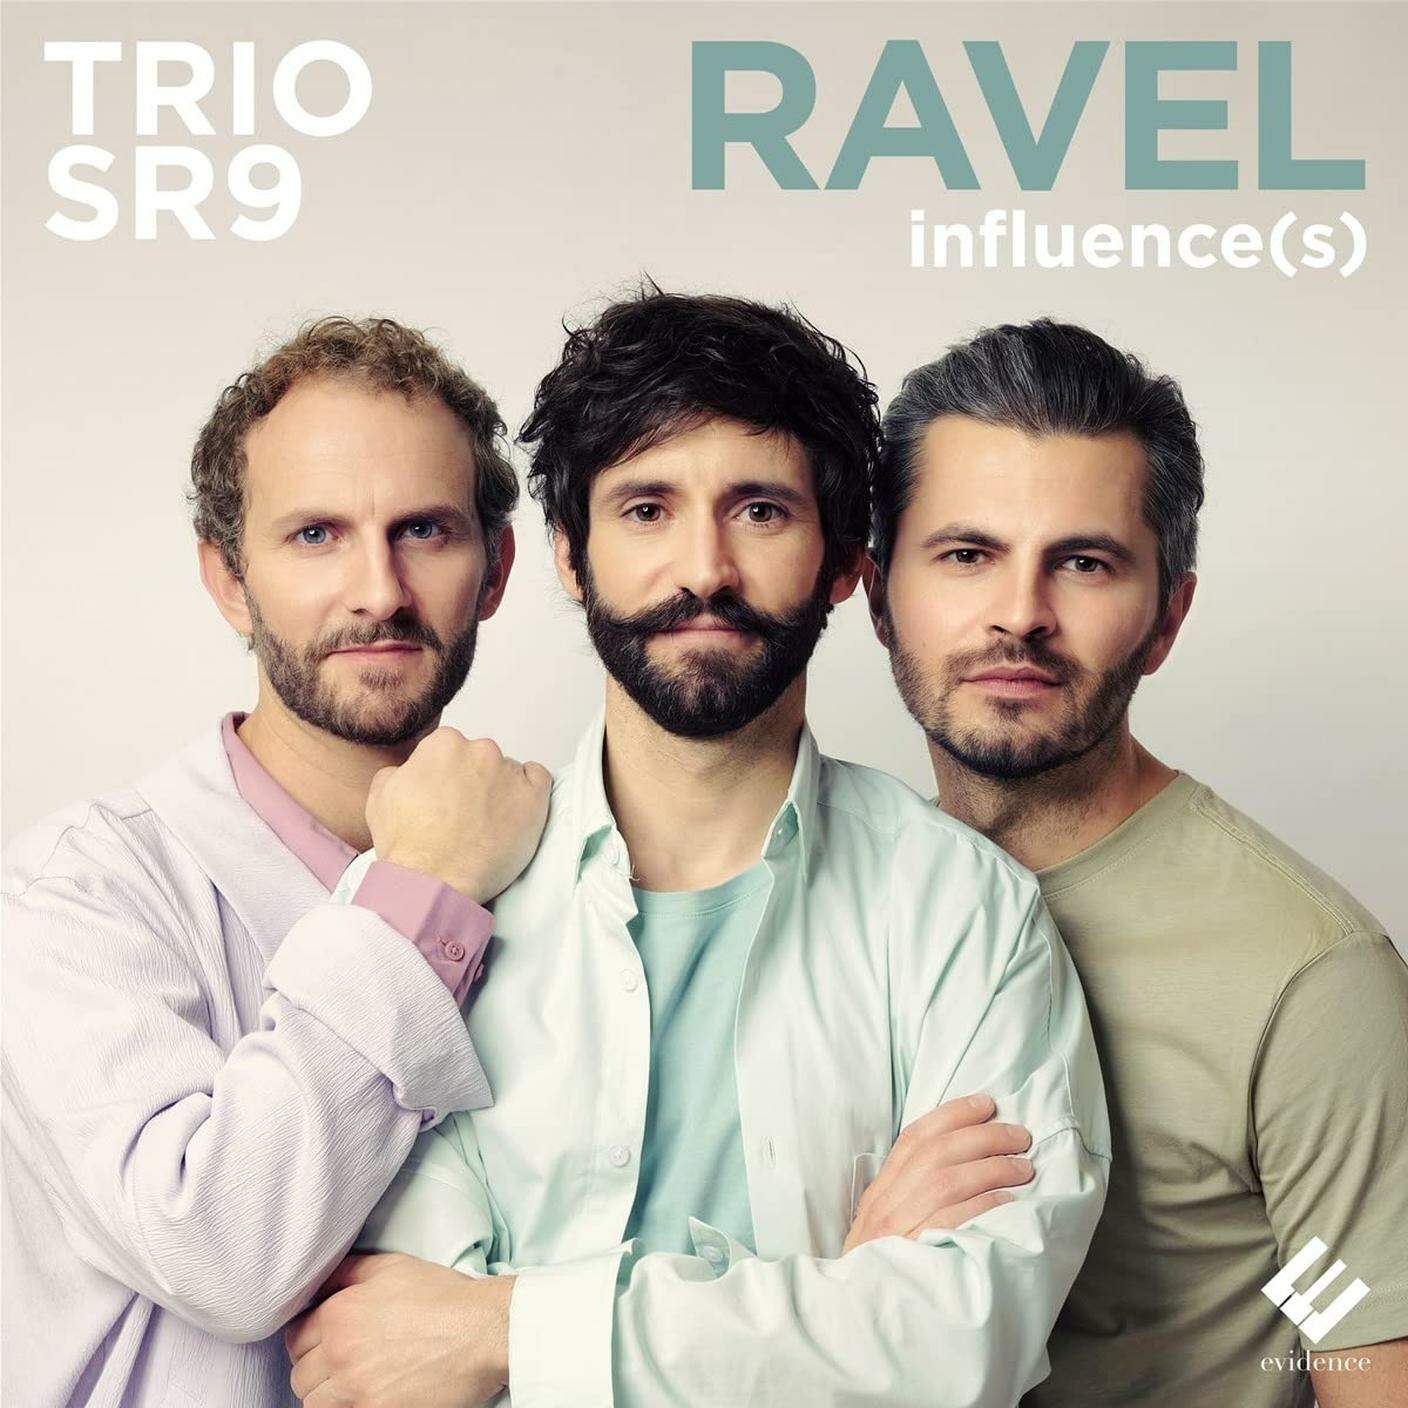 "Ravel Influence(s)" di Trio SR9, Evidence Classics (dettaglio di copertina)